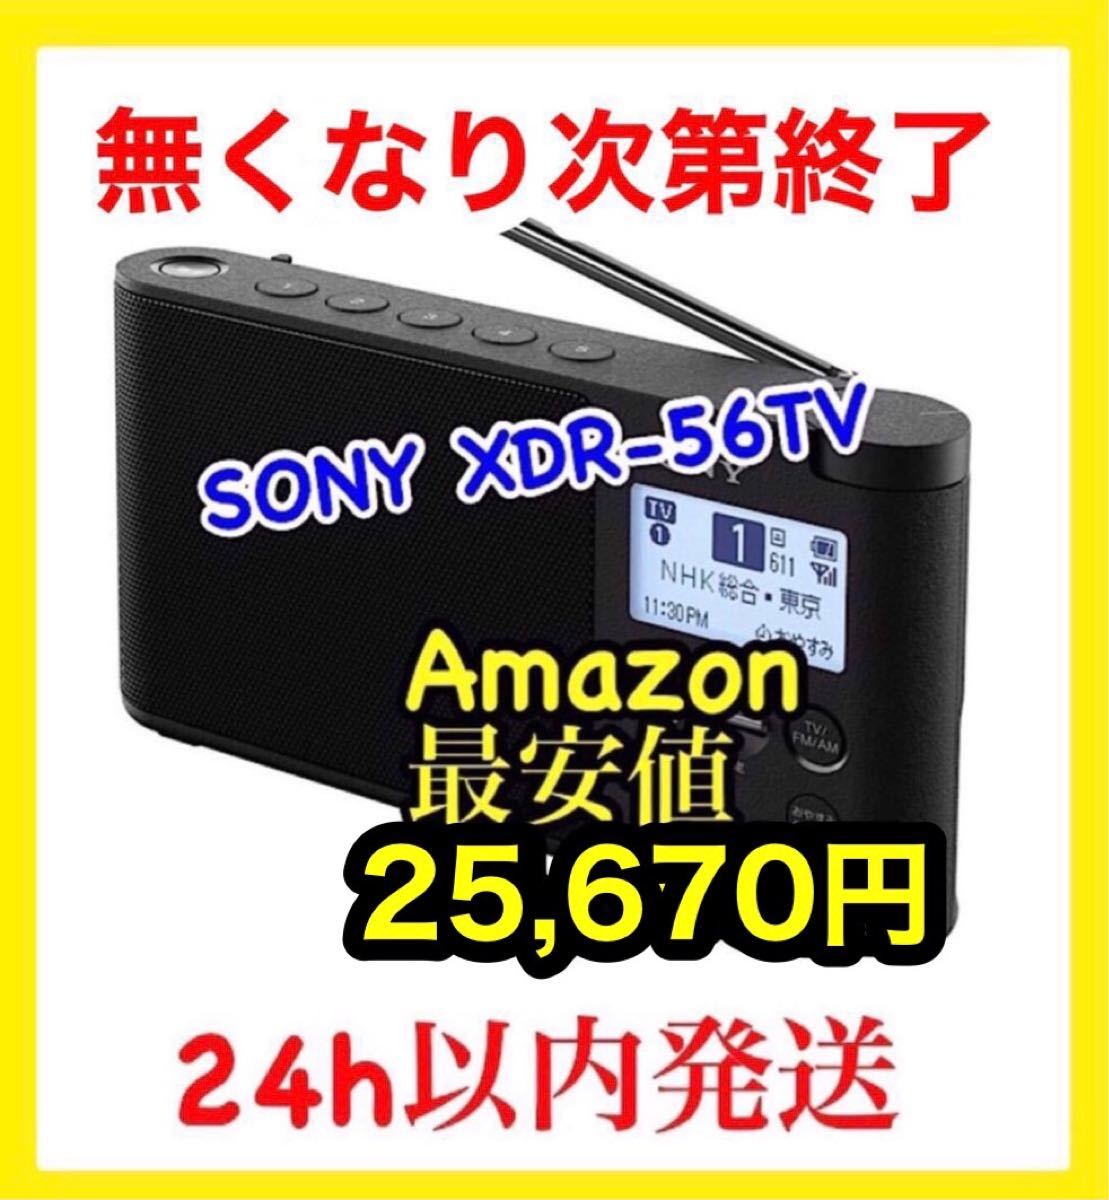 買物 ソニー ラジオ XDR-56TV : ワイドFM対応 FM AM ワンセグTV音声